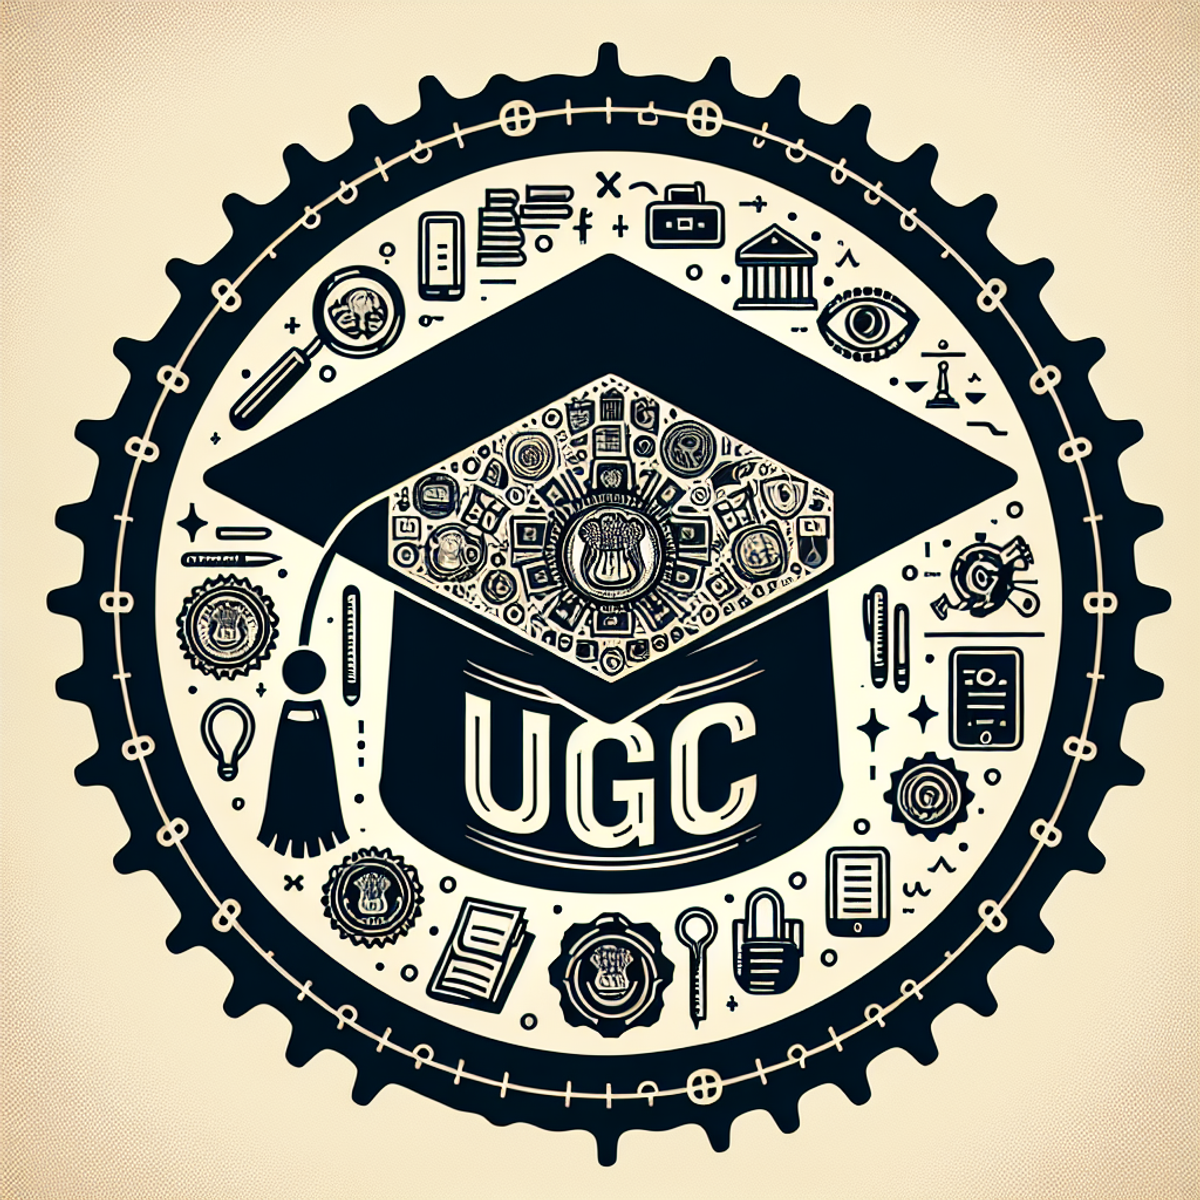 A graduation cap with a UGC emblem.